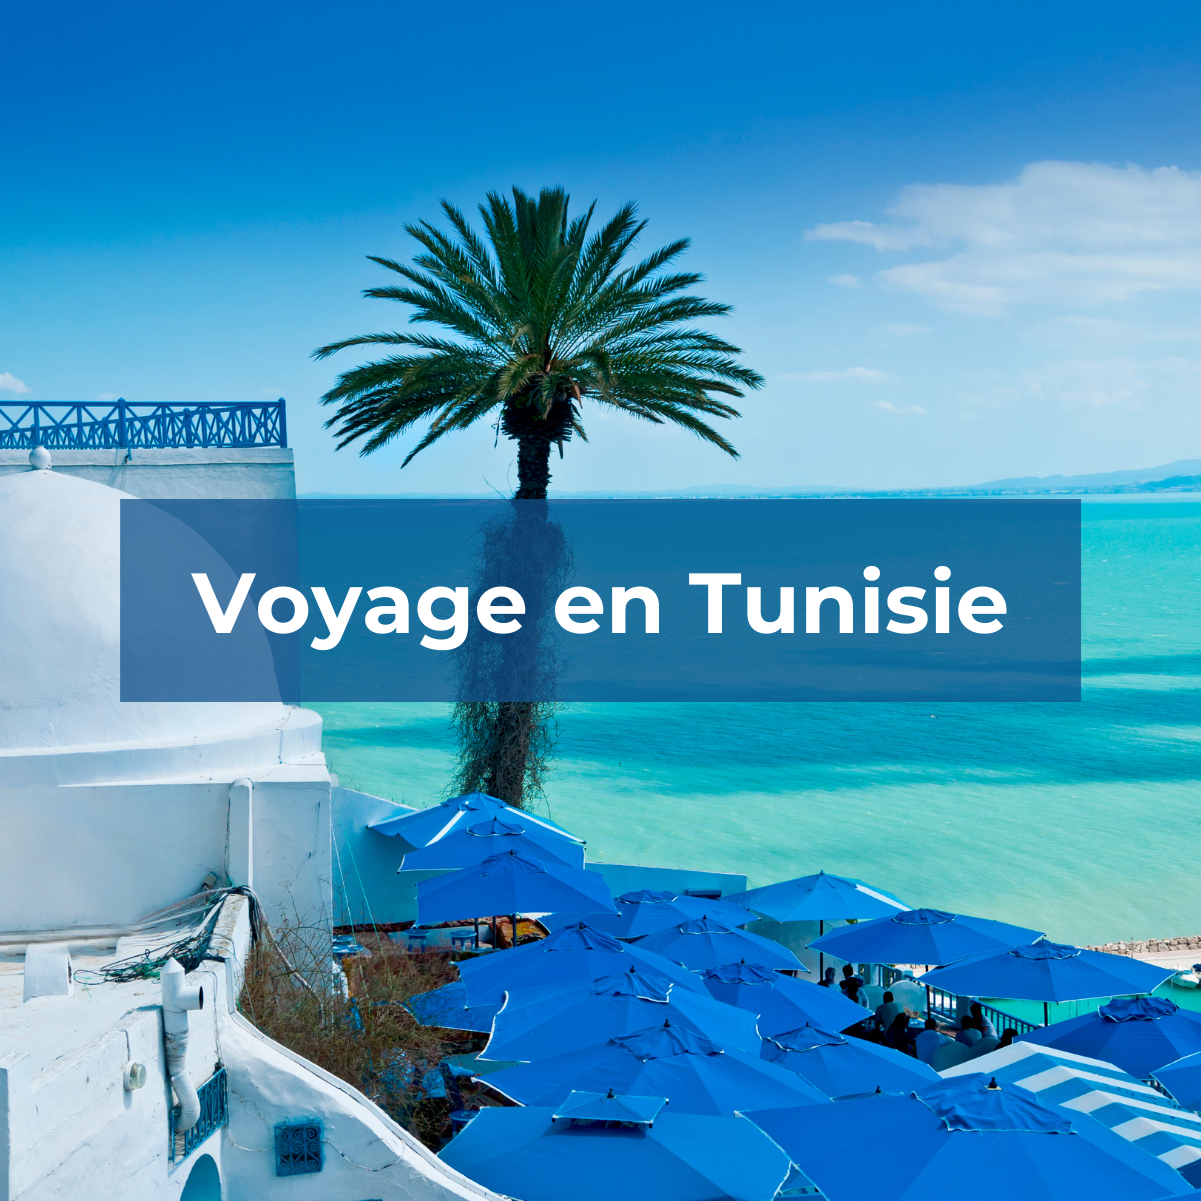 dream voyage tunisie